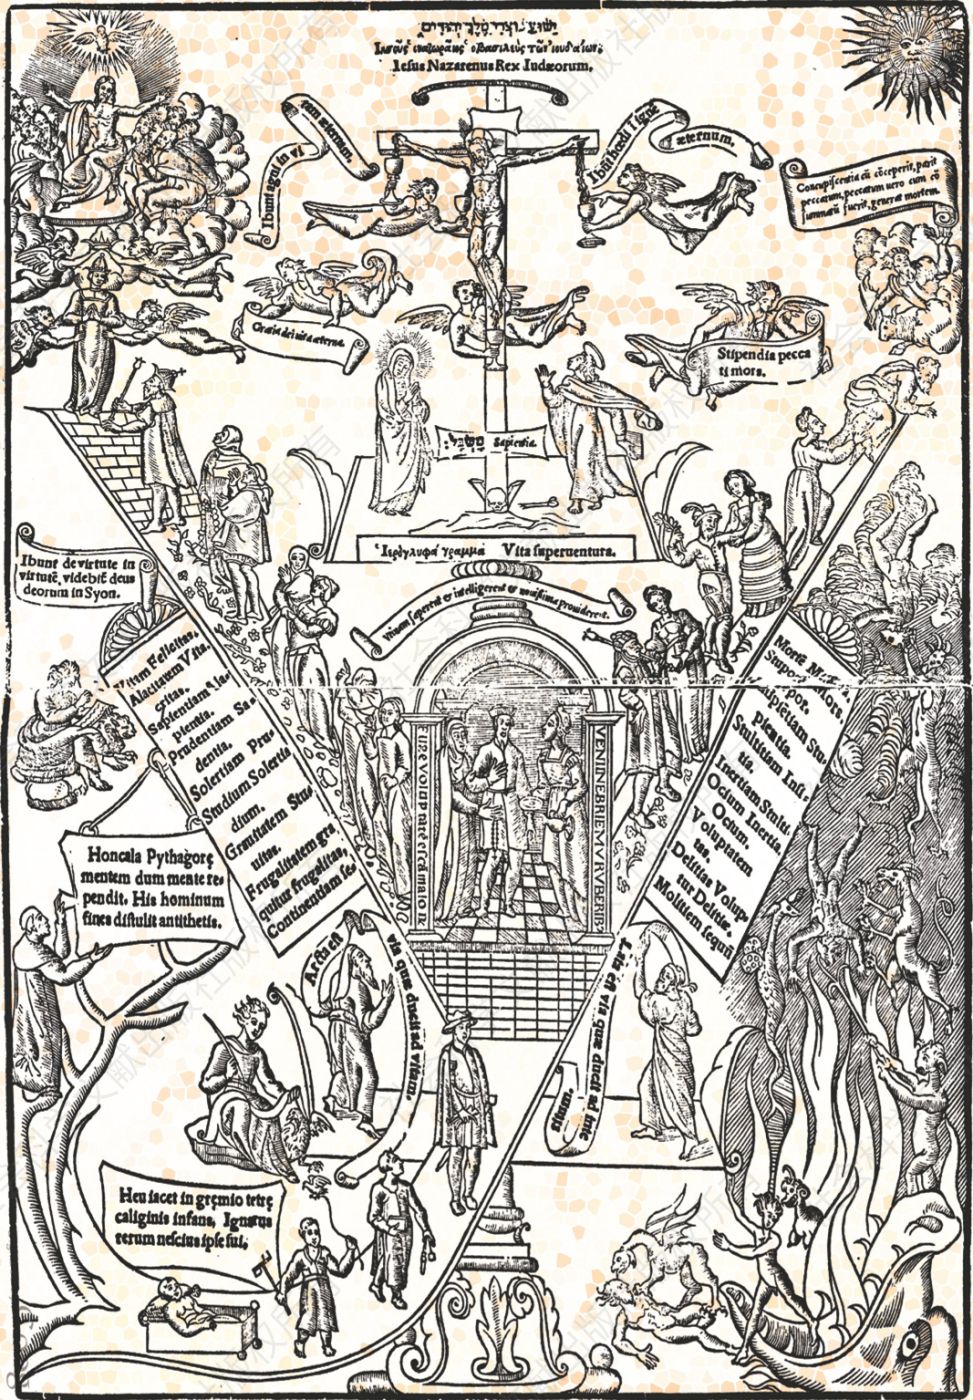 3.腓力二世的幼年和童年，Antonio de Honcala作，1546年。这是一部献给腓力二世的宗教著作，用希腊字母Υ来代表王子在人生旅途中面临的善恶道路选择。服装的变换反映了他从婴儿、幼儿到青少年的成长过程。其中有我们已知的最早的腓力二世肖像。在其中一幅图里，他牵着一只用绳子拴着的鸟。